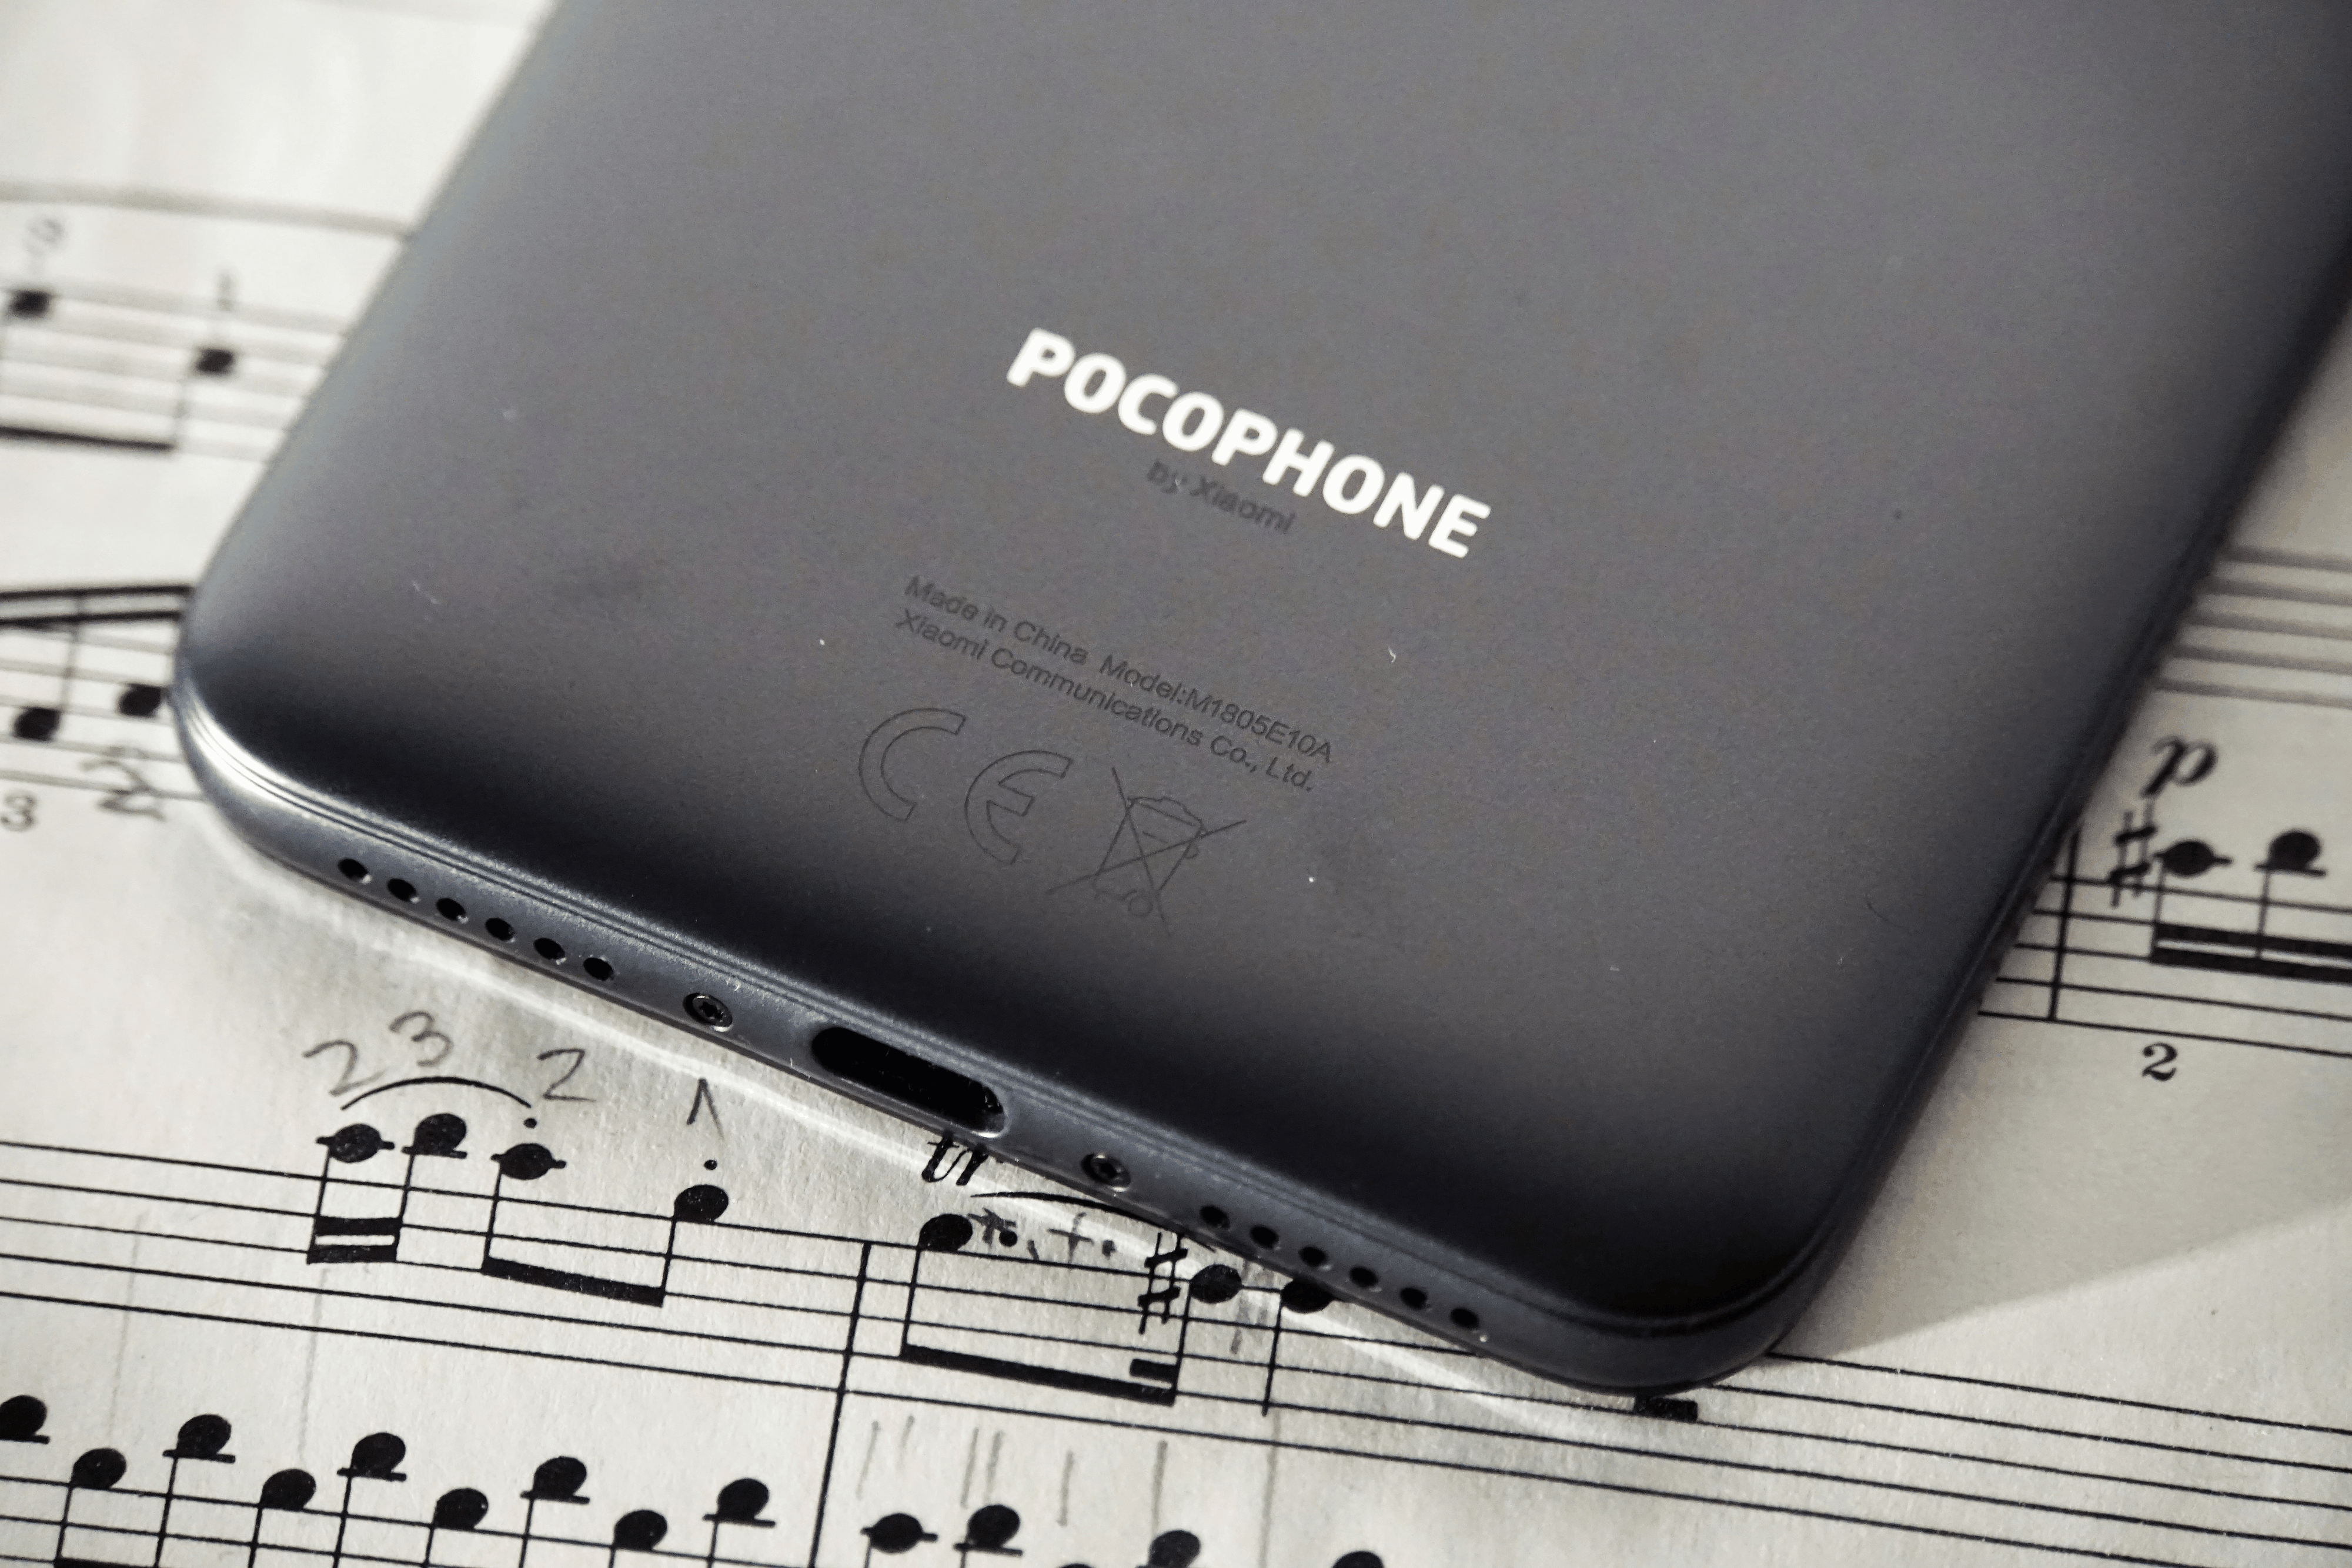 Das ist es also: Das <strong>Pocophone F1</strong> von Xiaomi. Ich konnte es die letzten sechs Wochen ausgiebig testen.